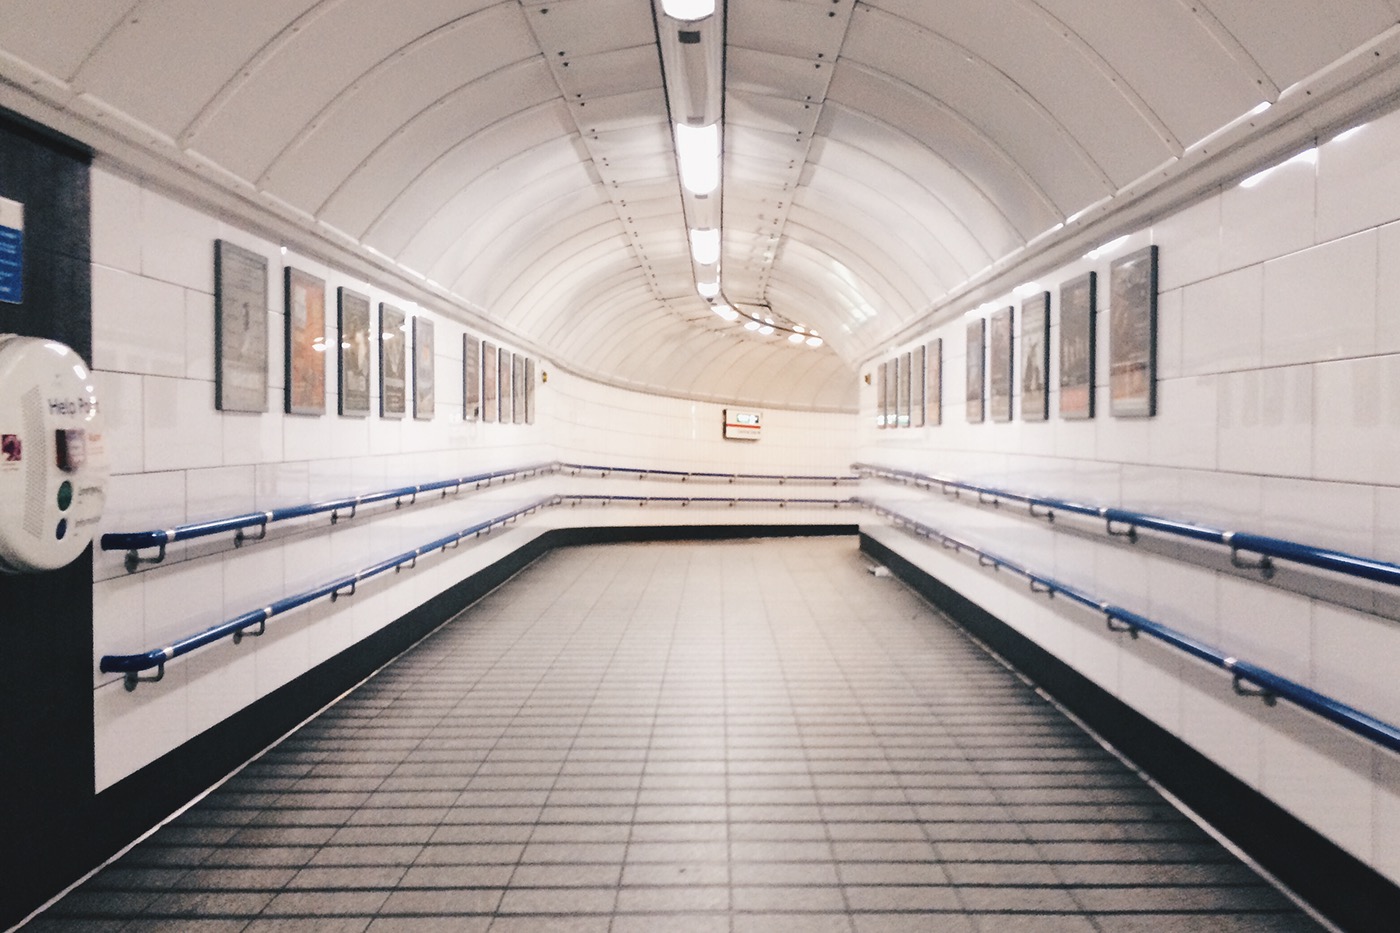 London underground tube subway empty iphone vscocam UK